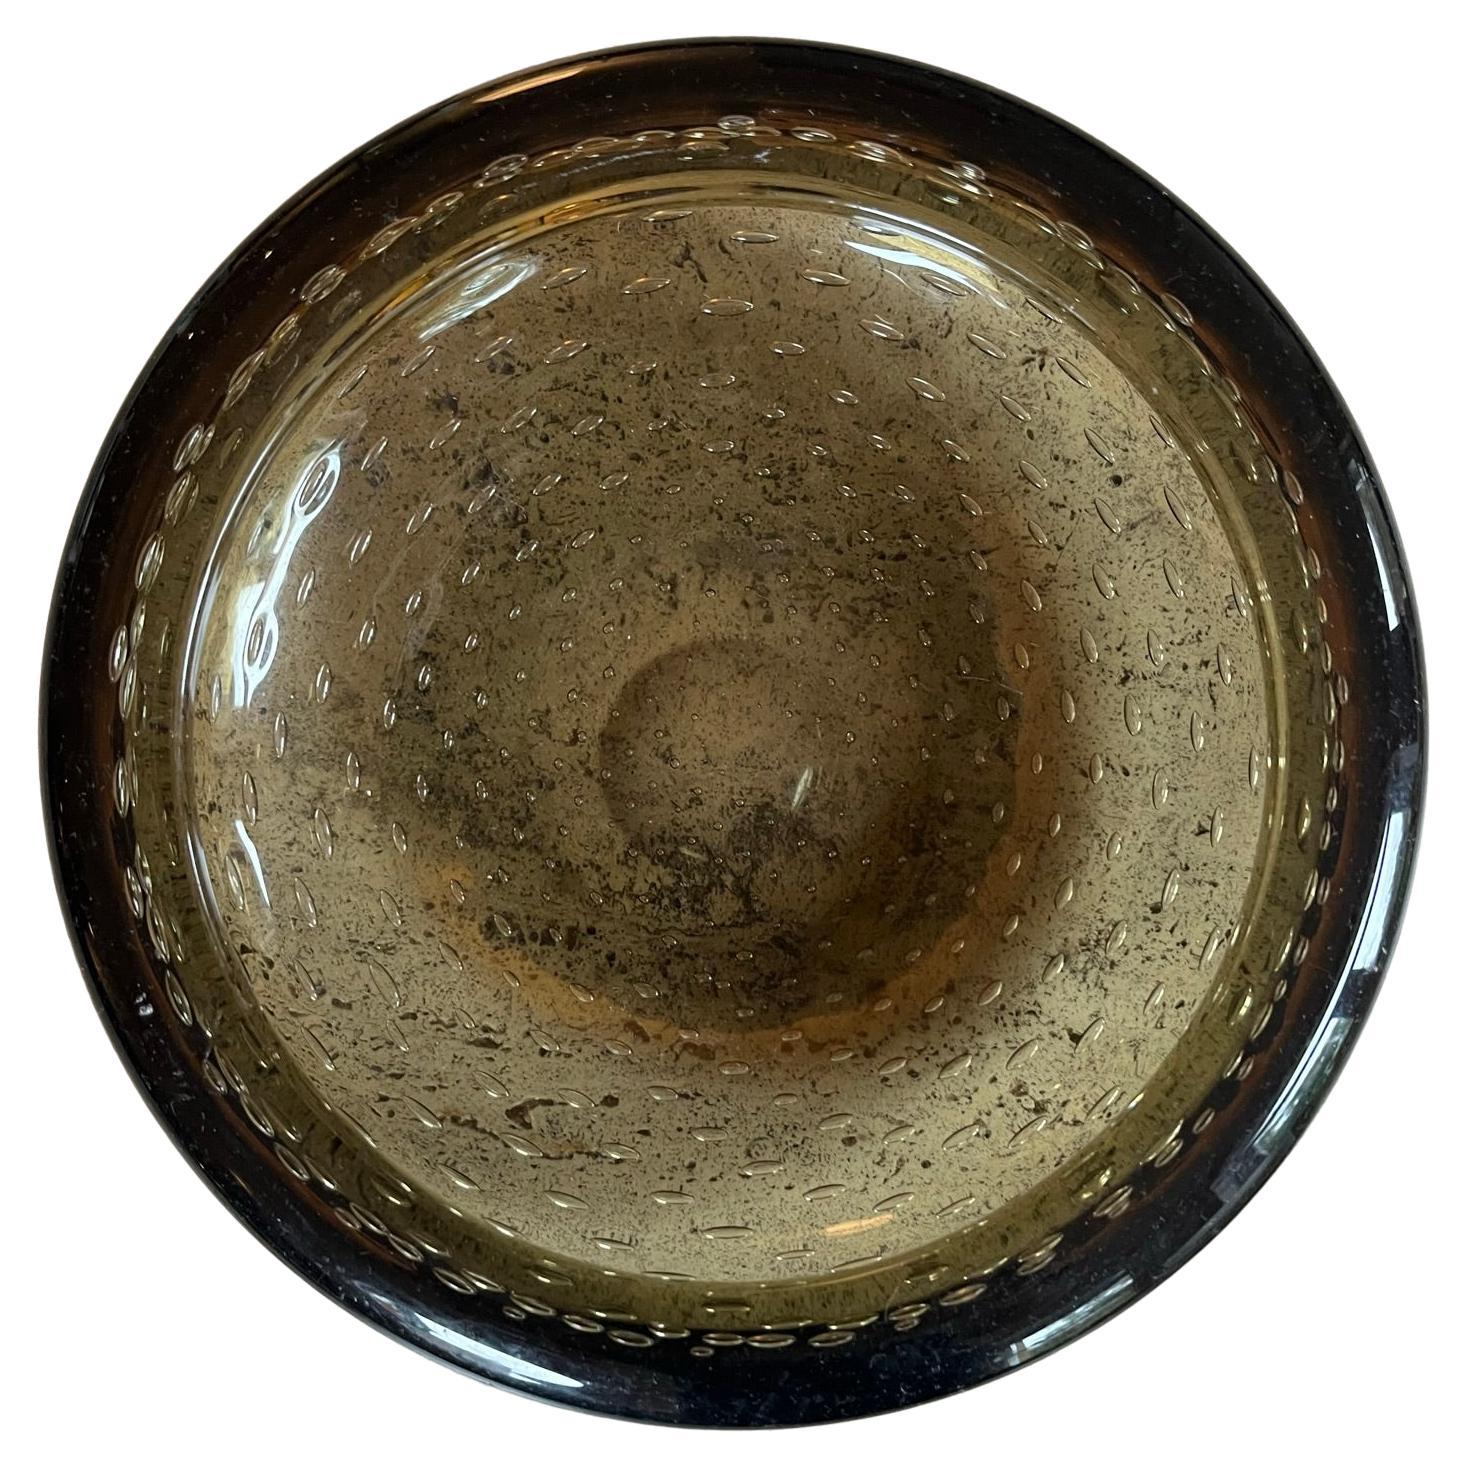 Handblown bubble glass bowl